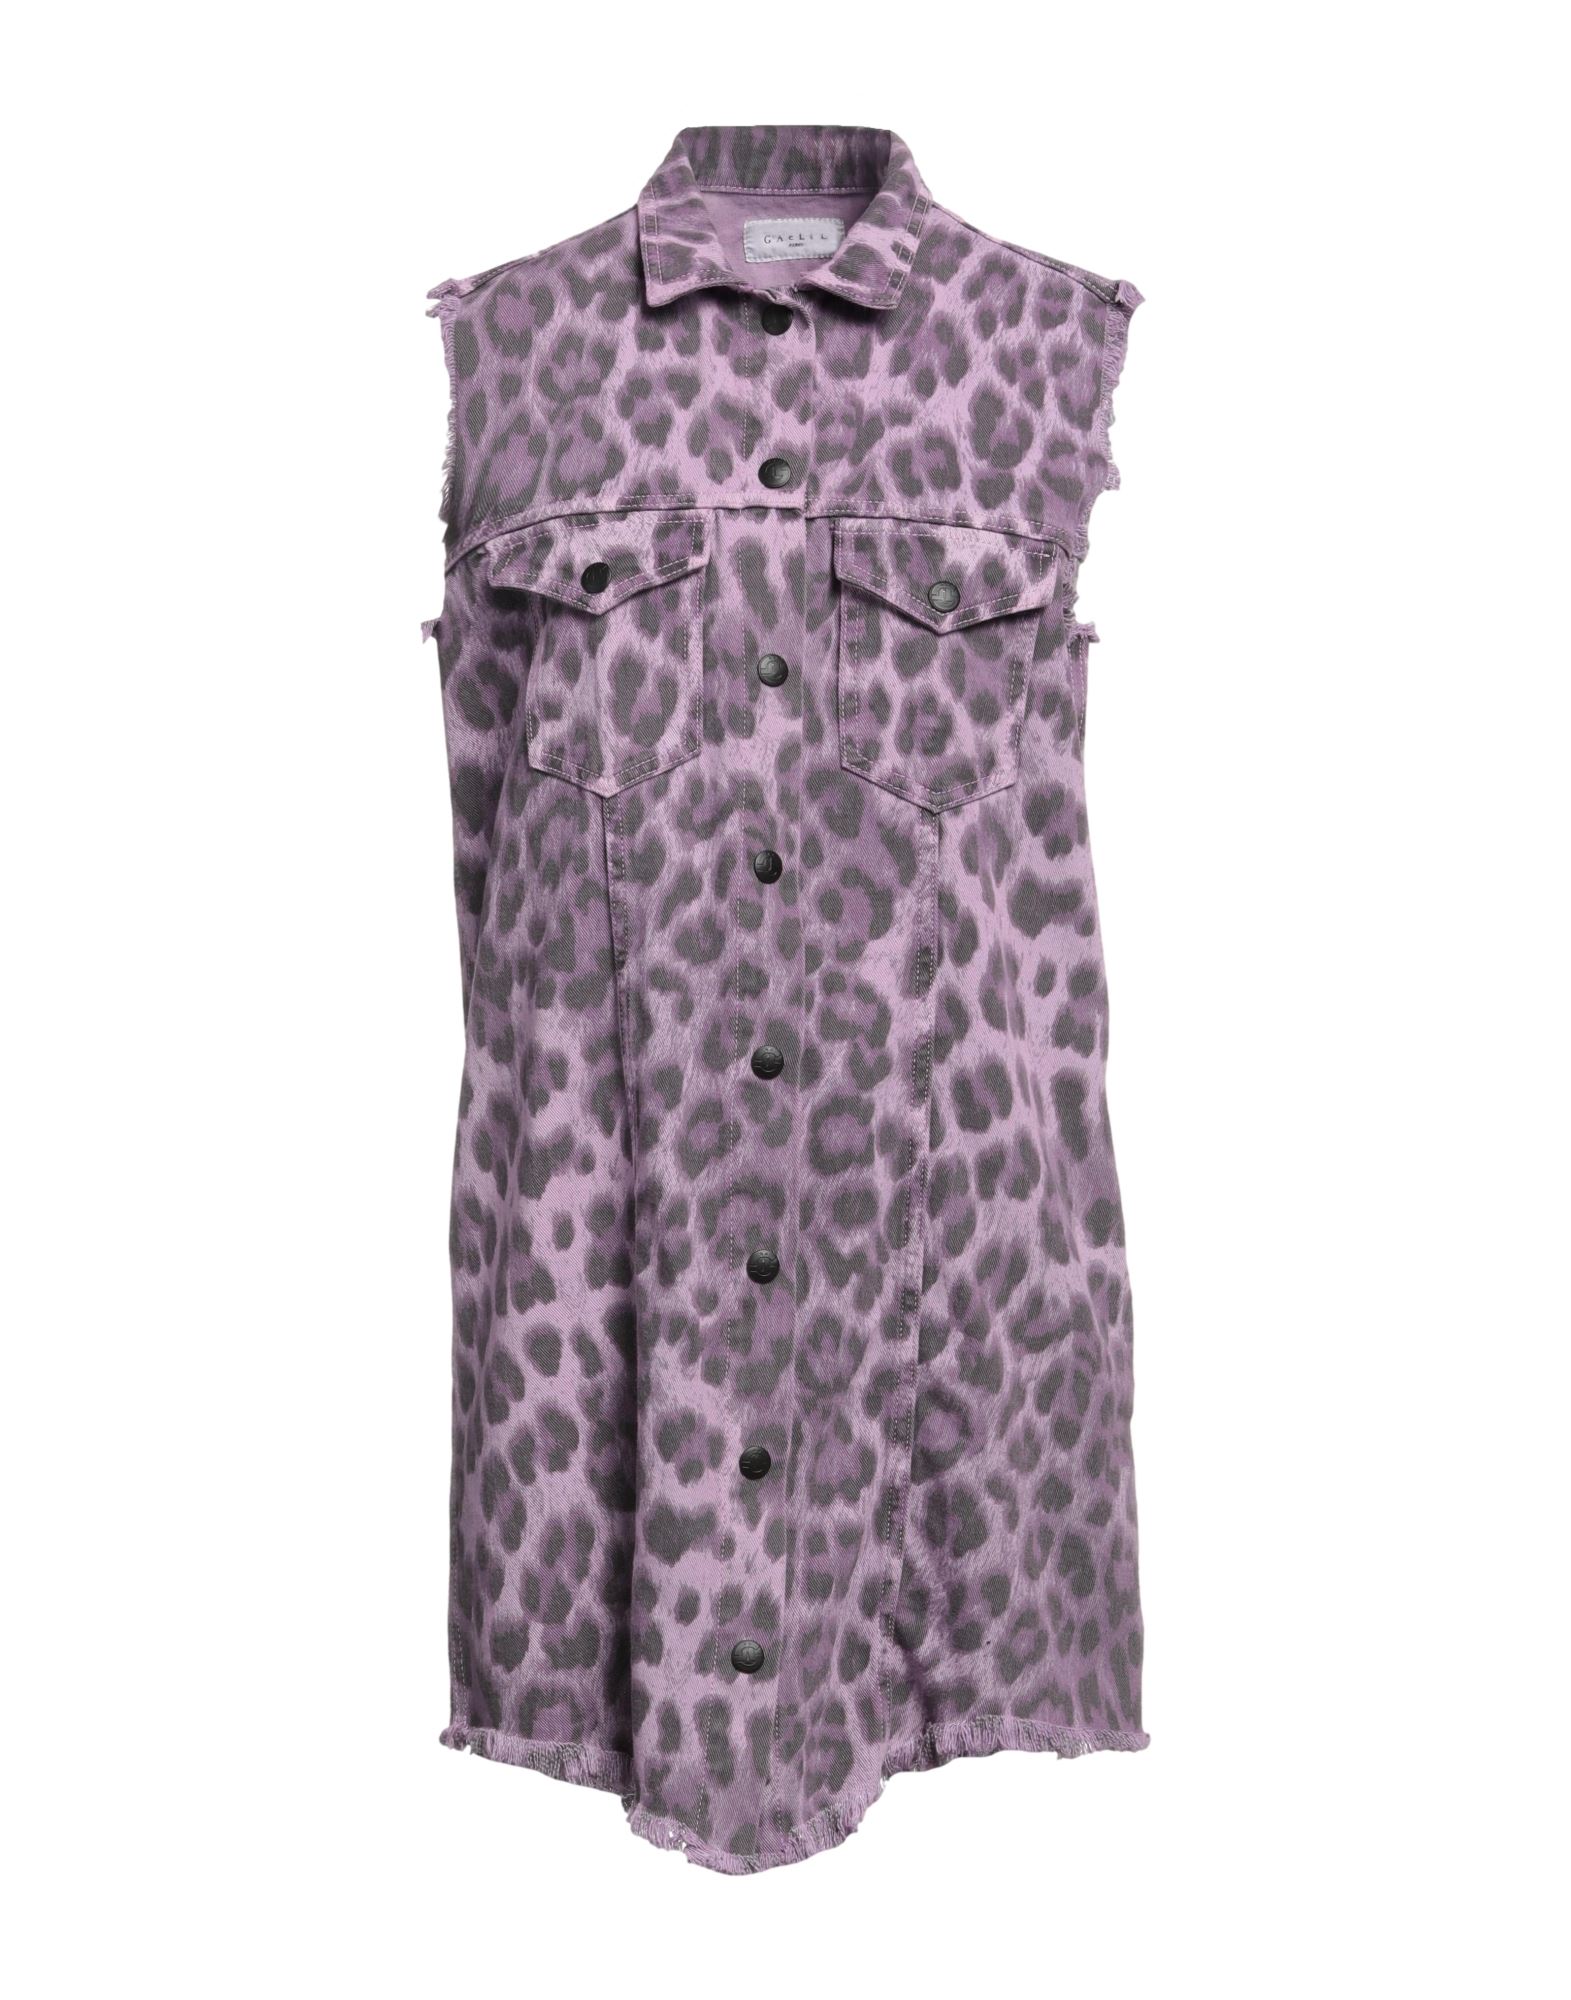 Gaelle Paris Short Dresses In Purple